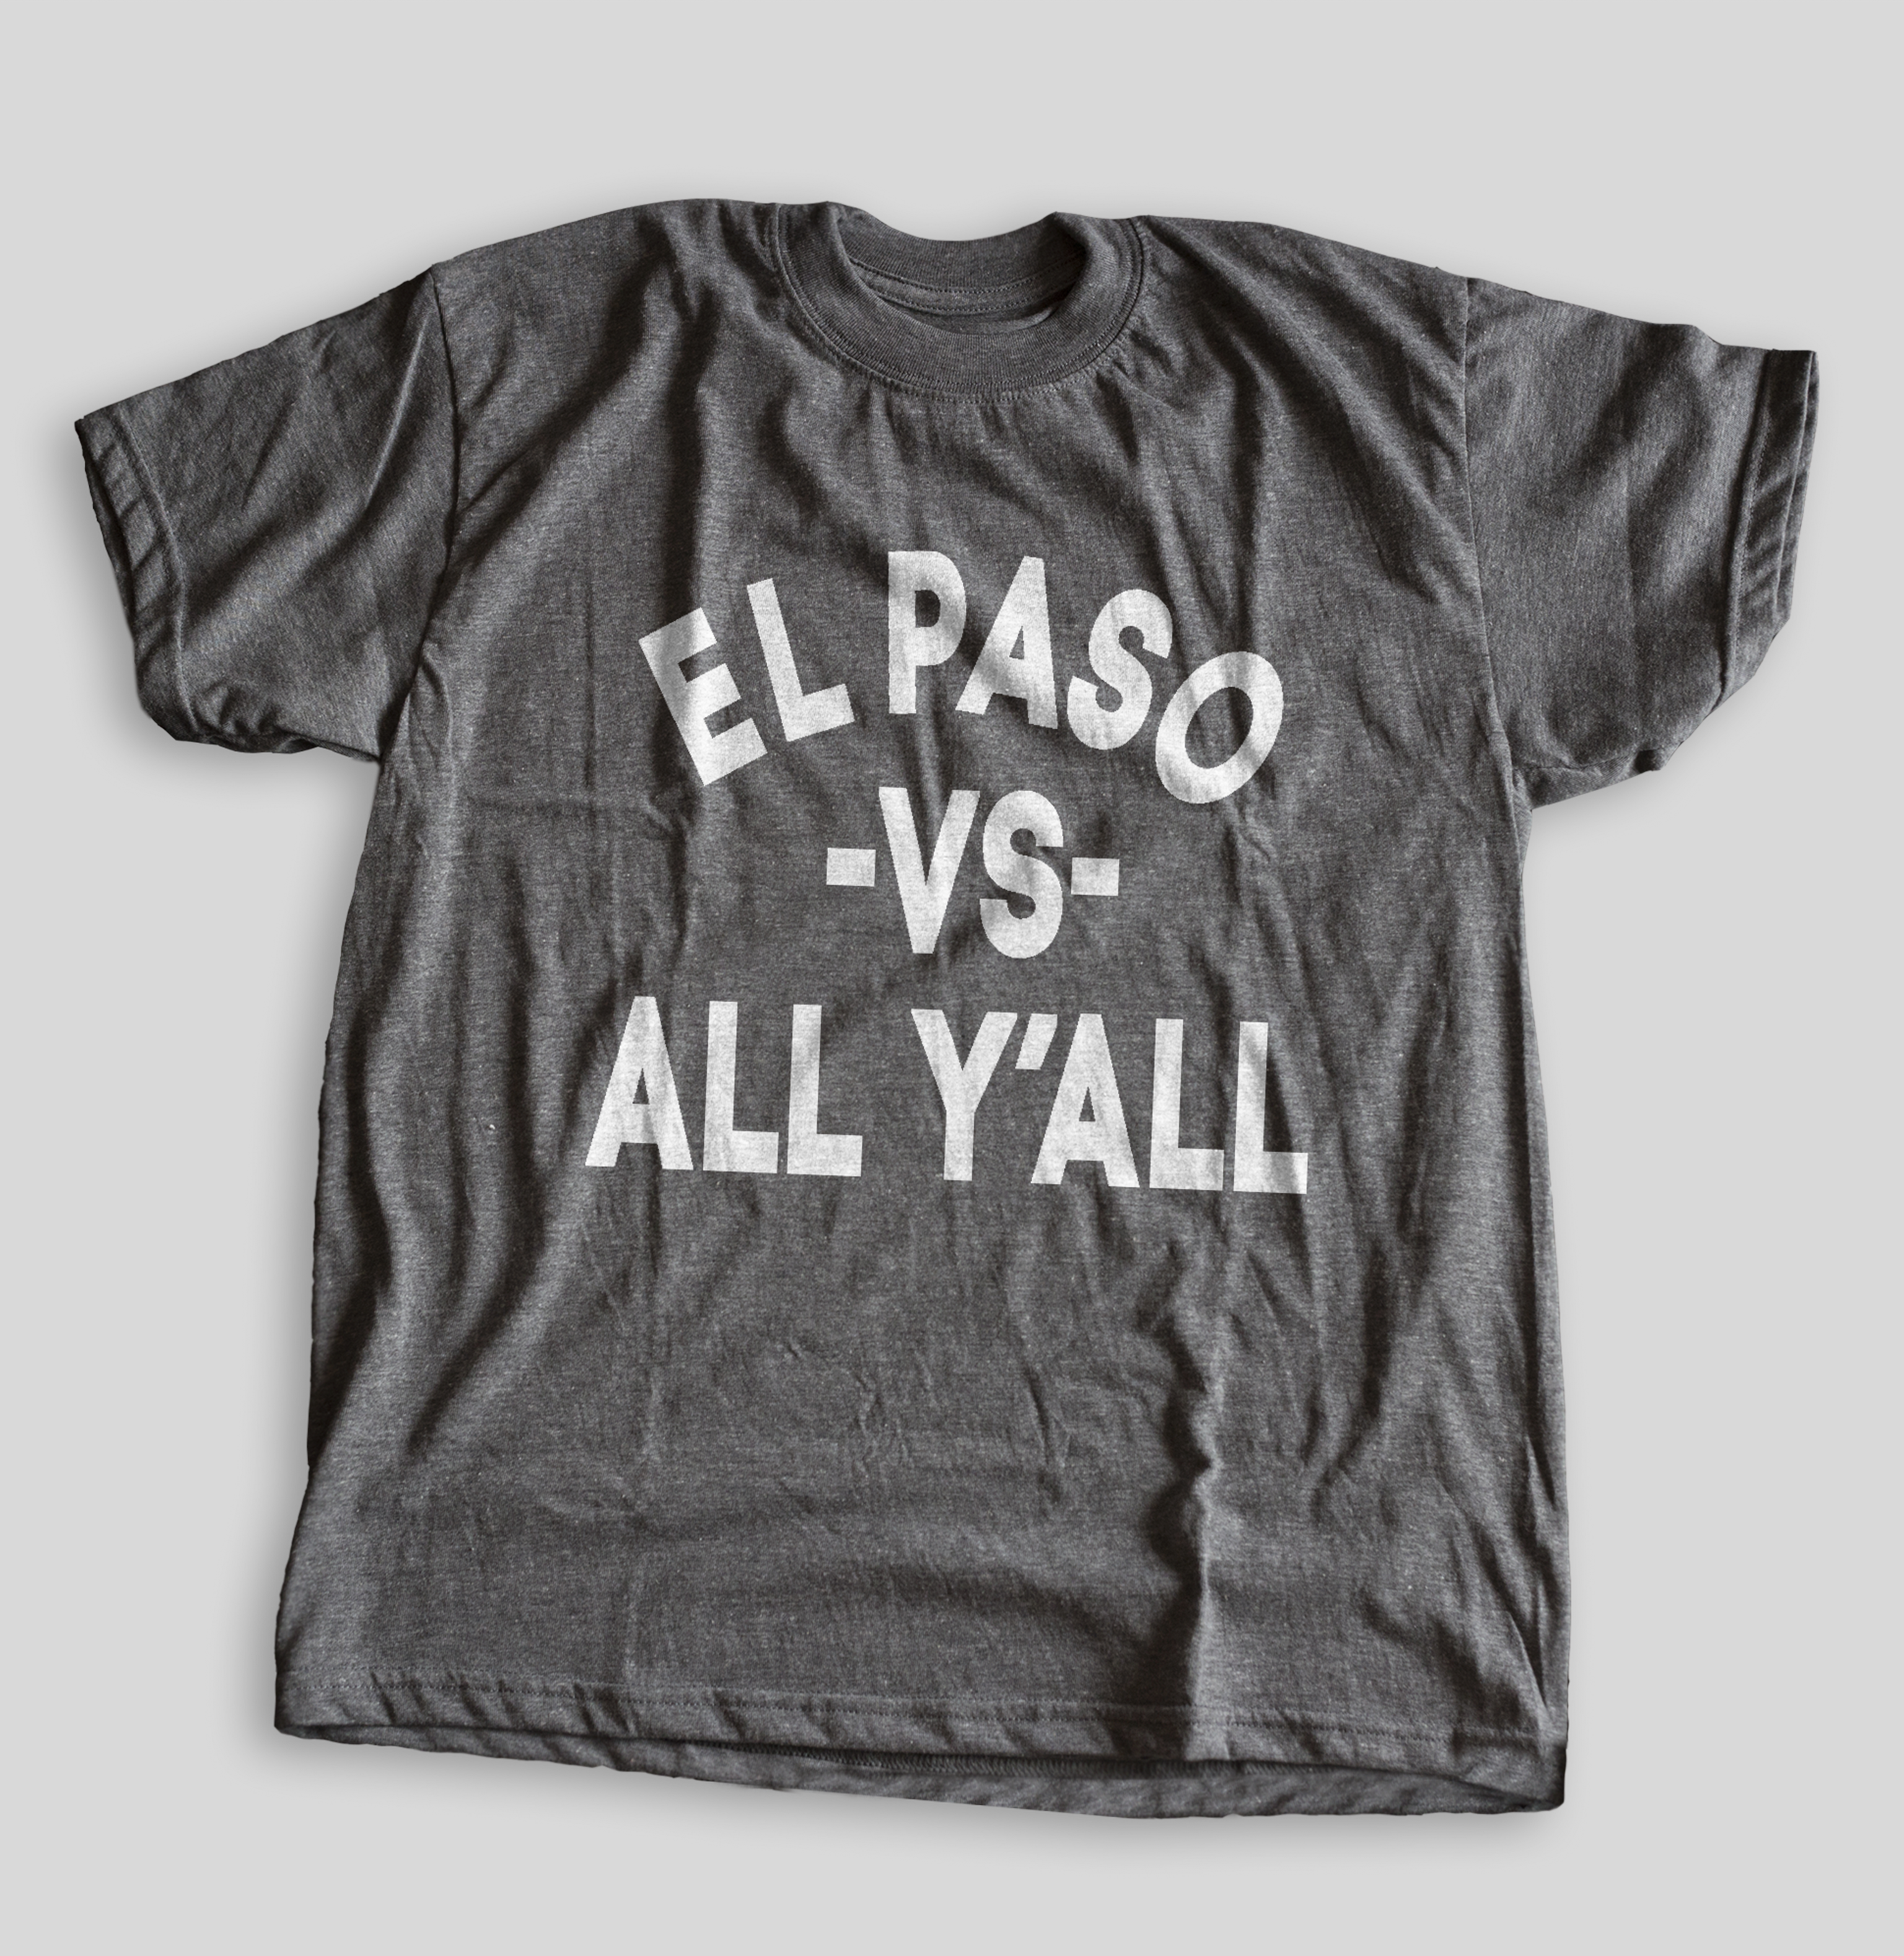 El Paso vs All"" Men's T-shirt (Gray Heathered) by illpaso